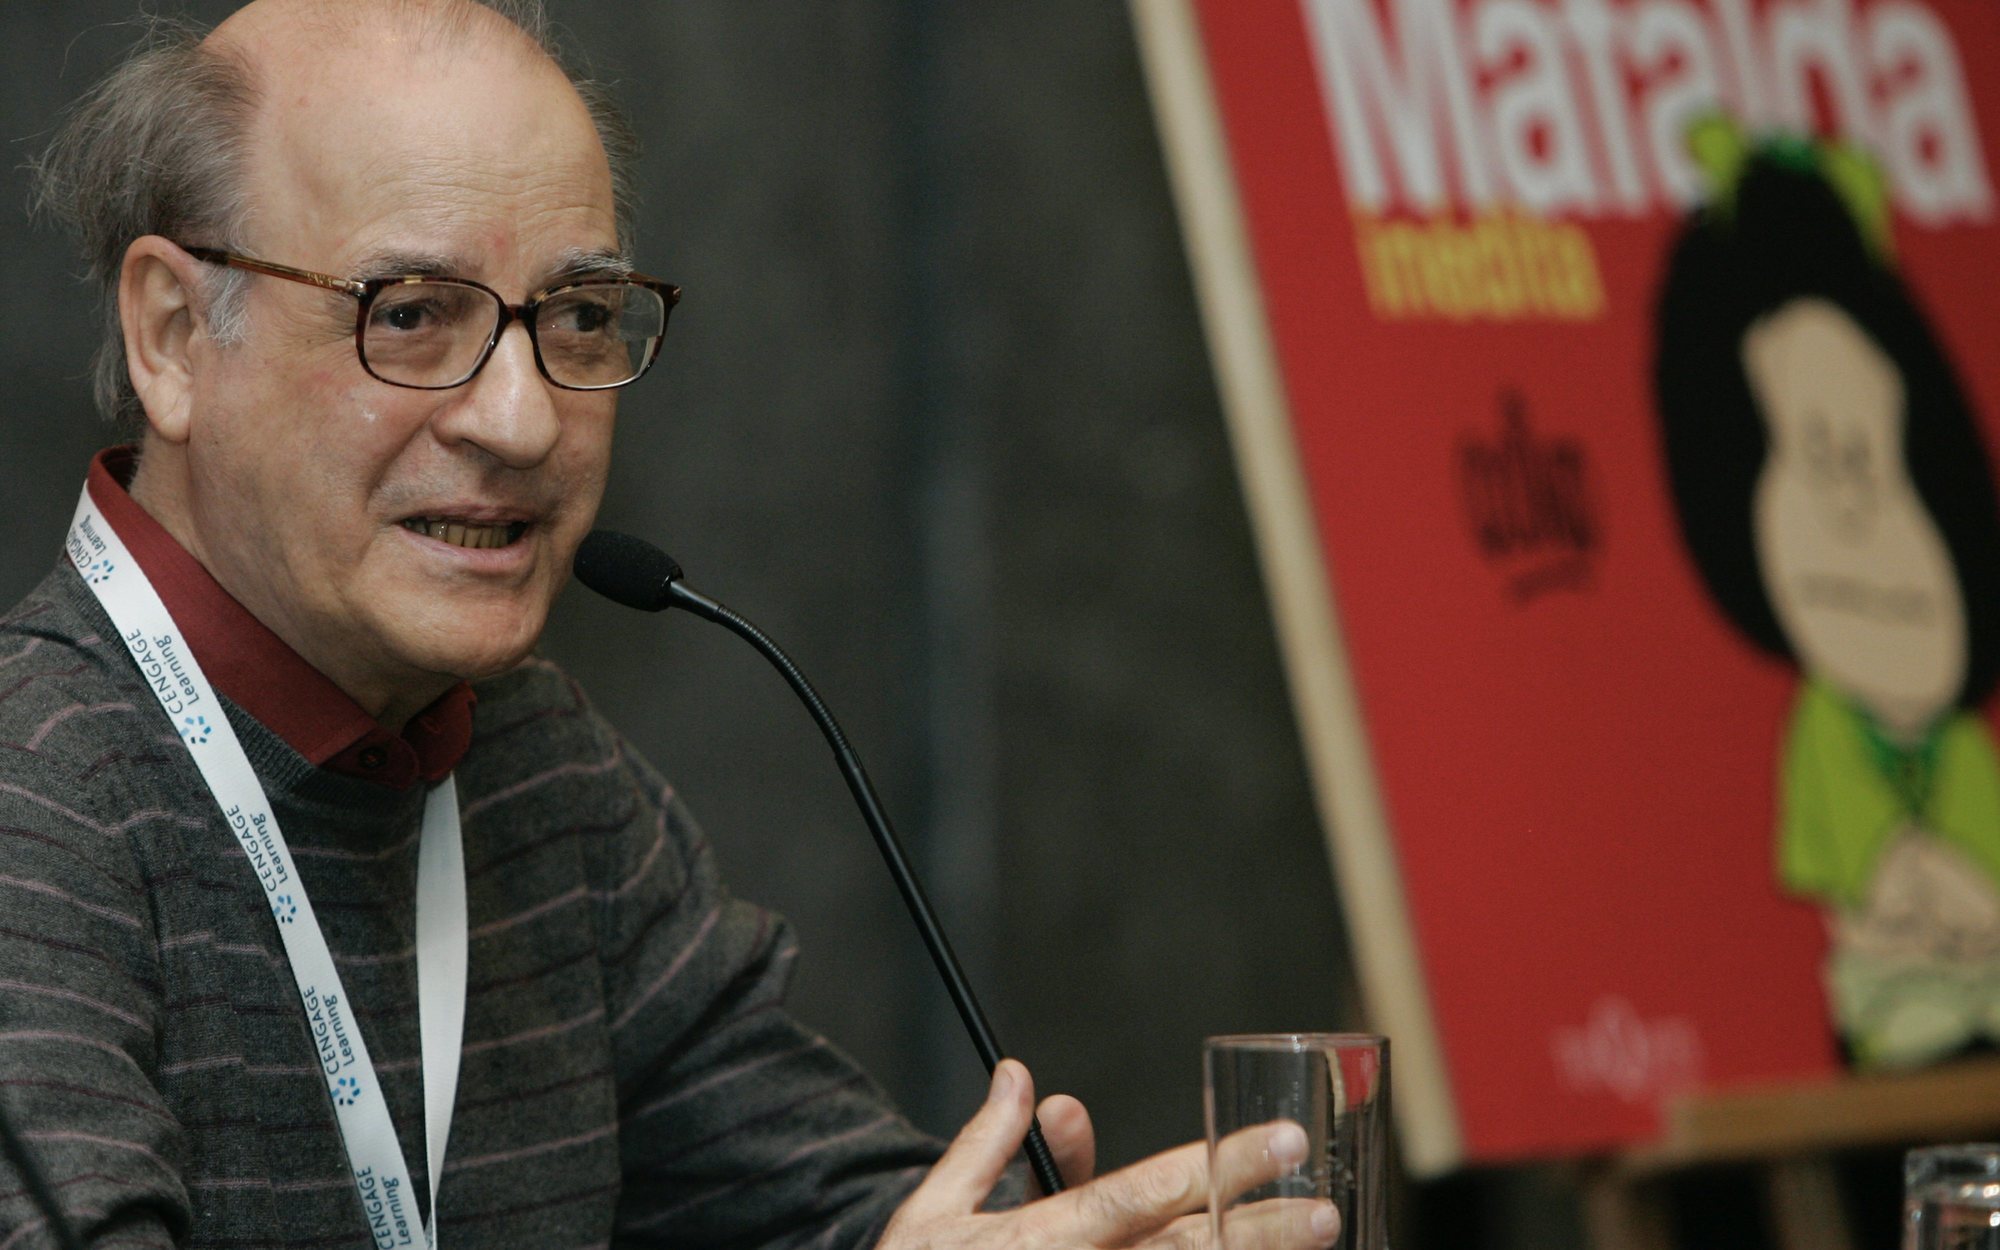 Muere Quino, creador de Mafalda, a los 88 años